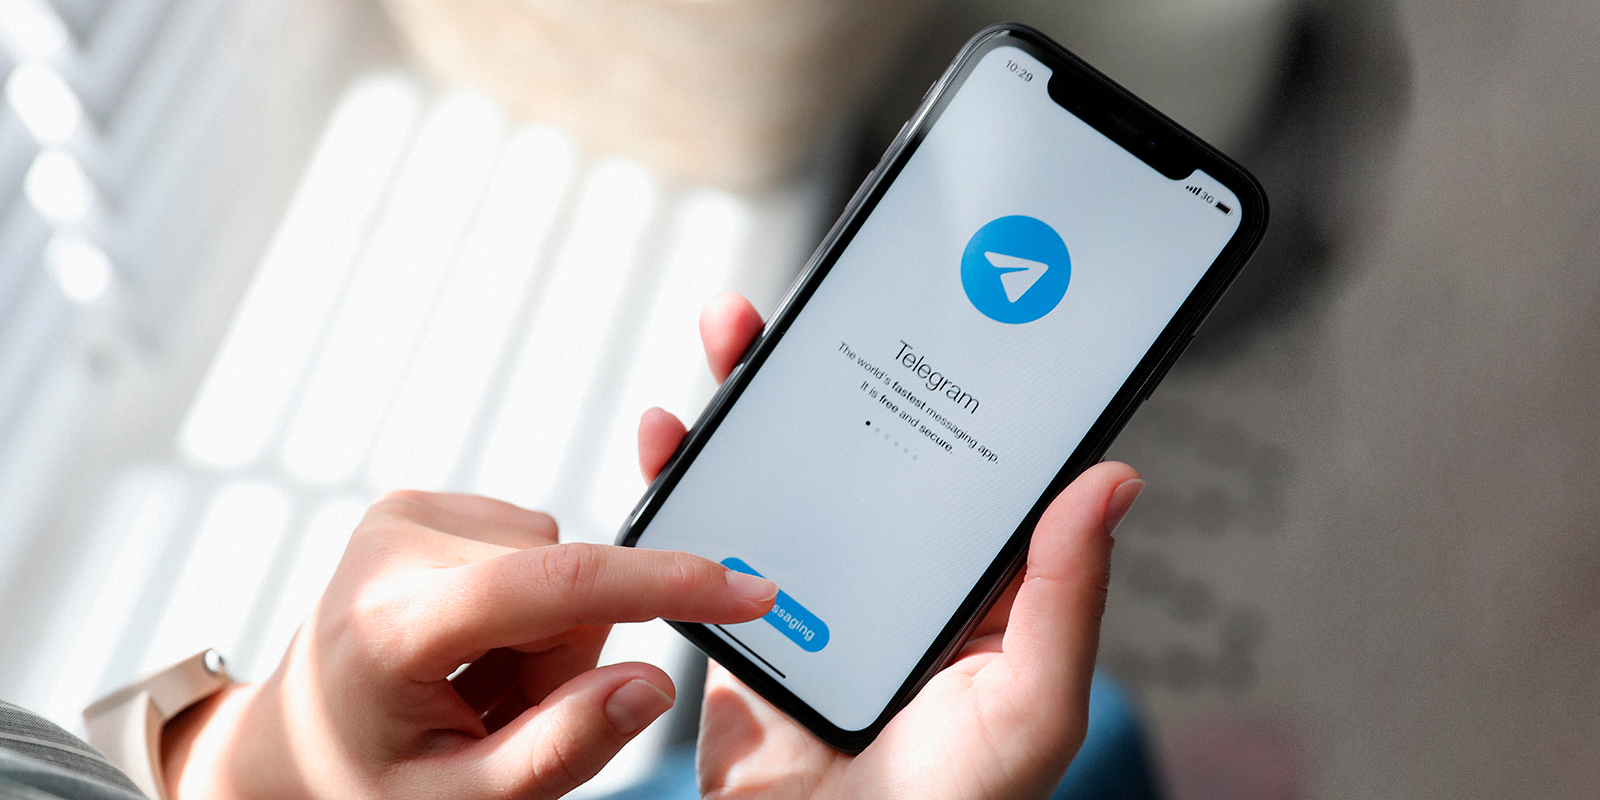 Следите за актуальными новостями в Telegram